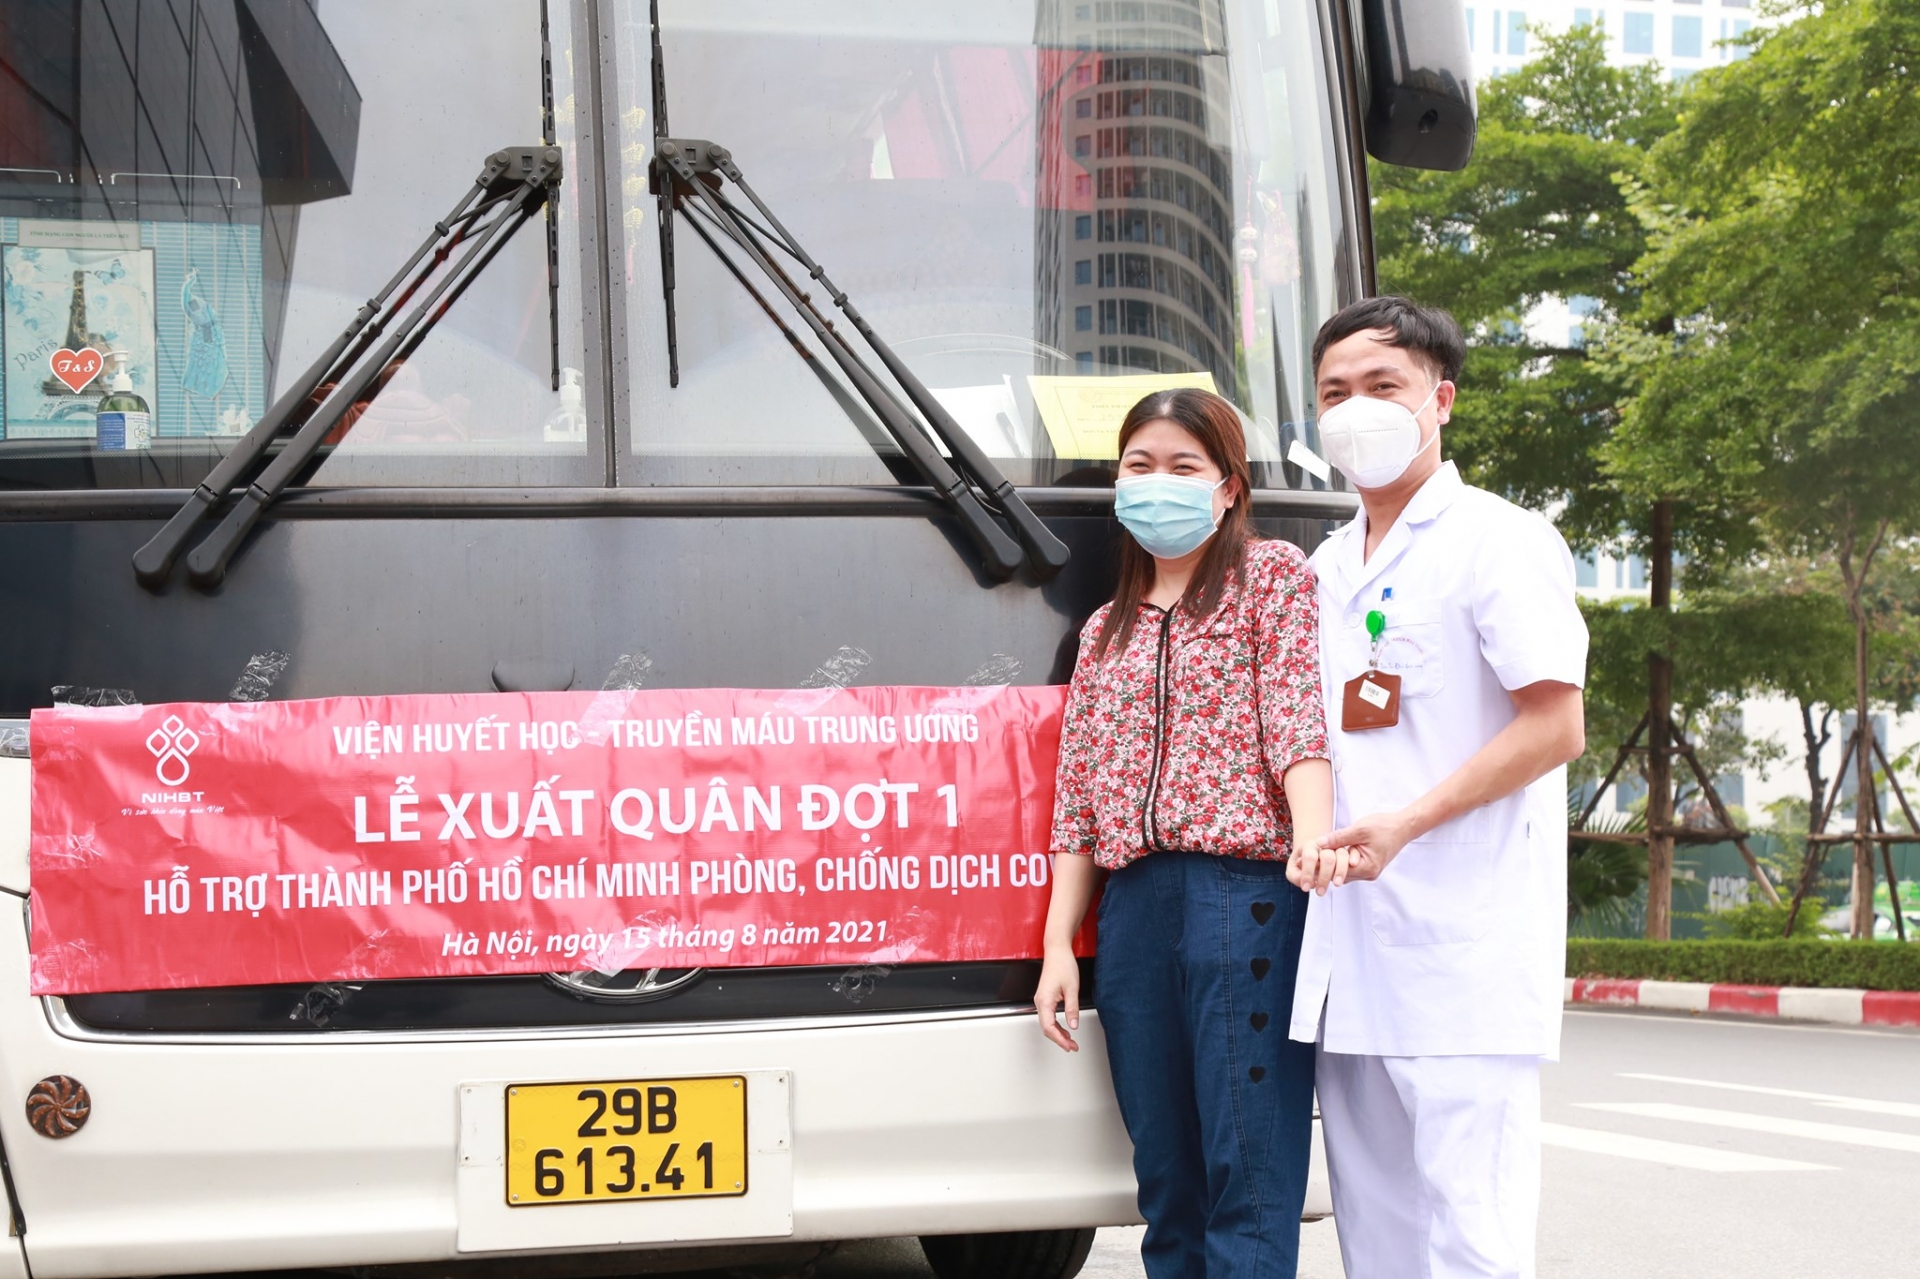 Anh Trần Văn Luật chia tay vợ là chị Trần Thị Nhung trước khi lên đường vào Nam làm nhiệm vụ, cả hai anh chị đều công tác tại Viện Huyết học – Truyền máu Trung ương.